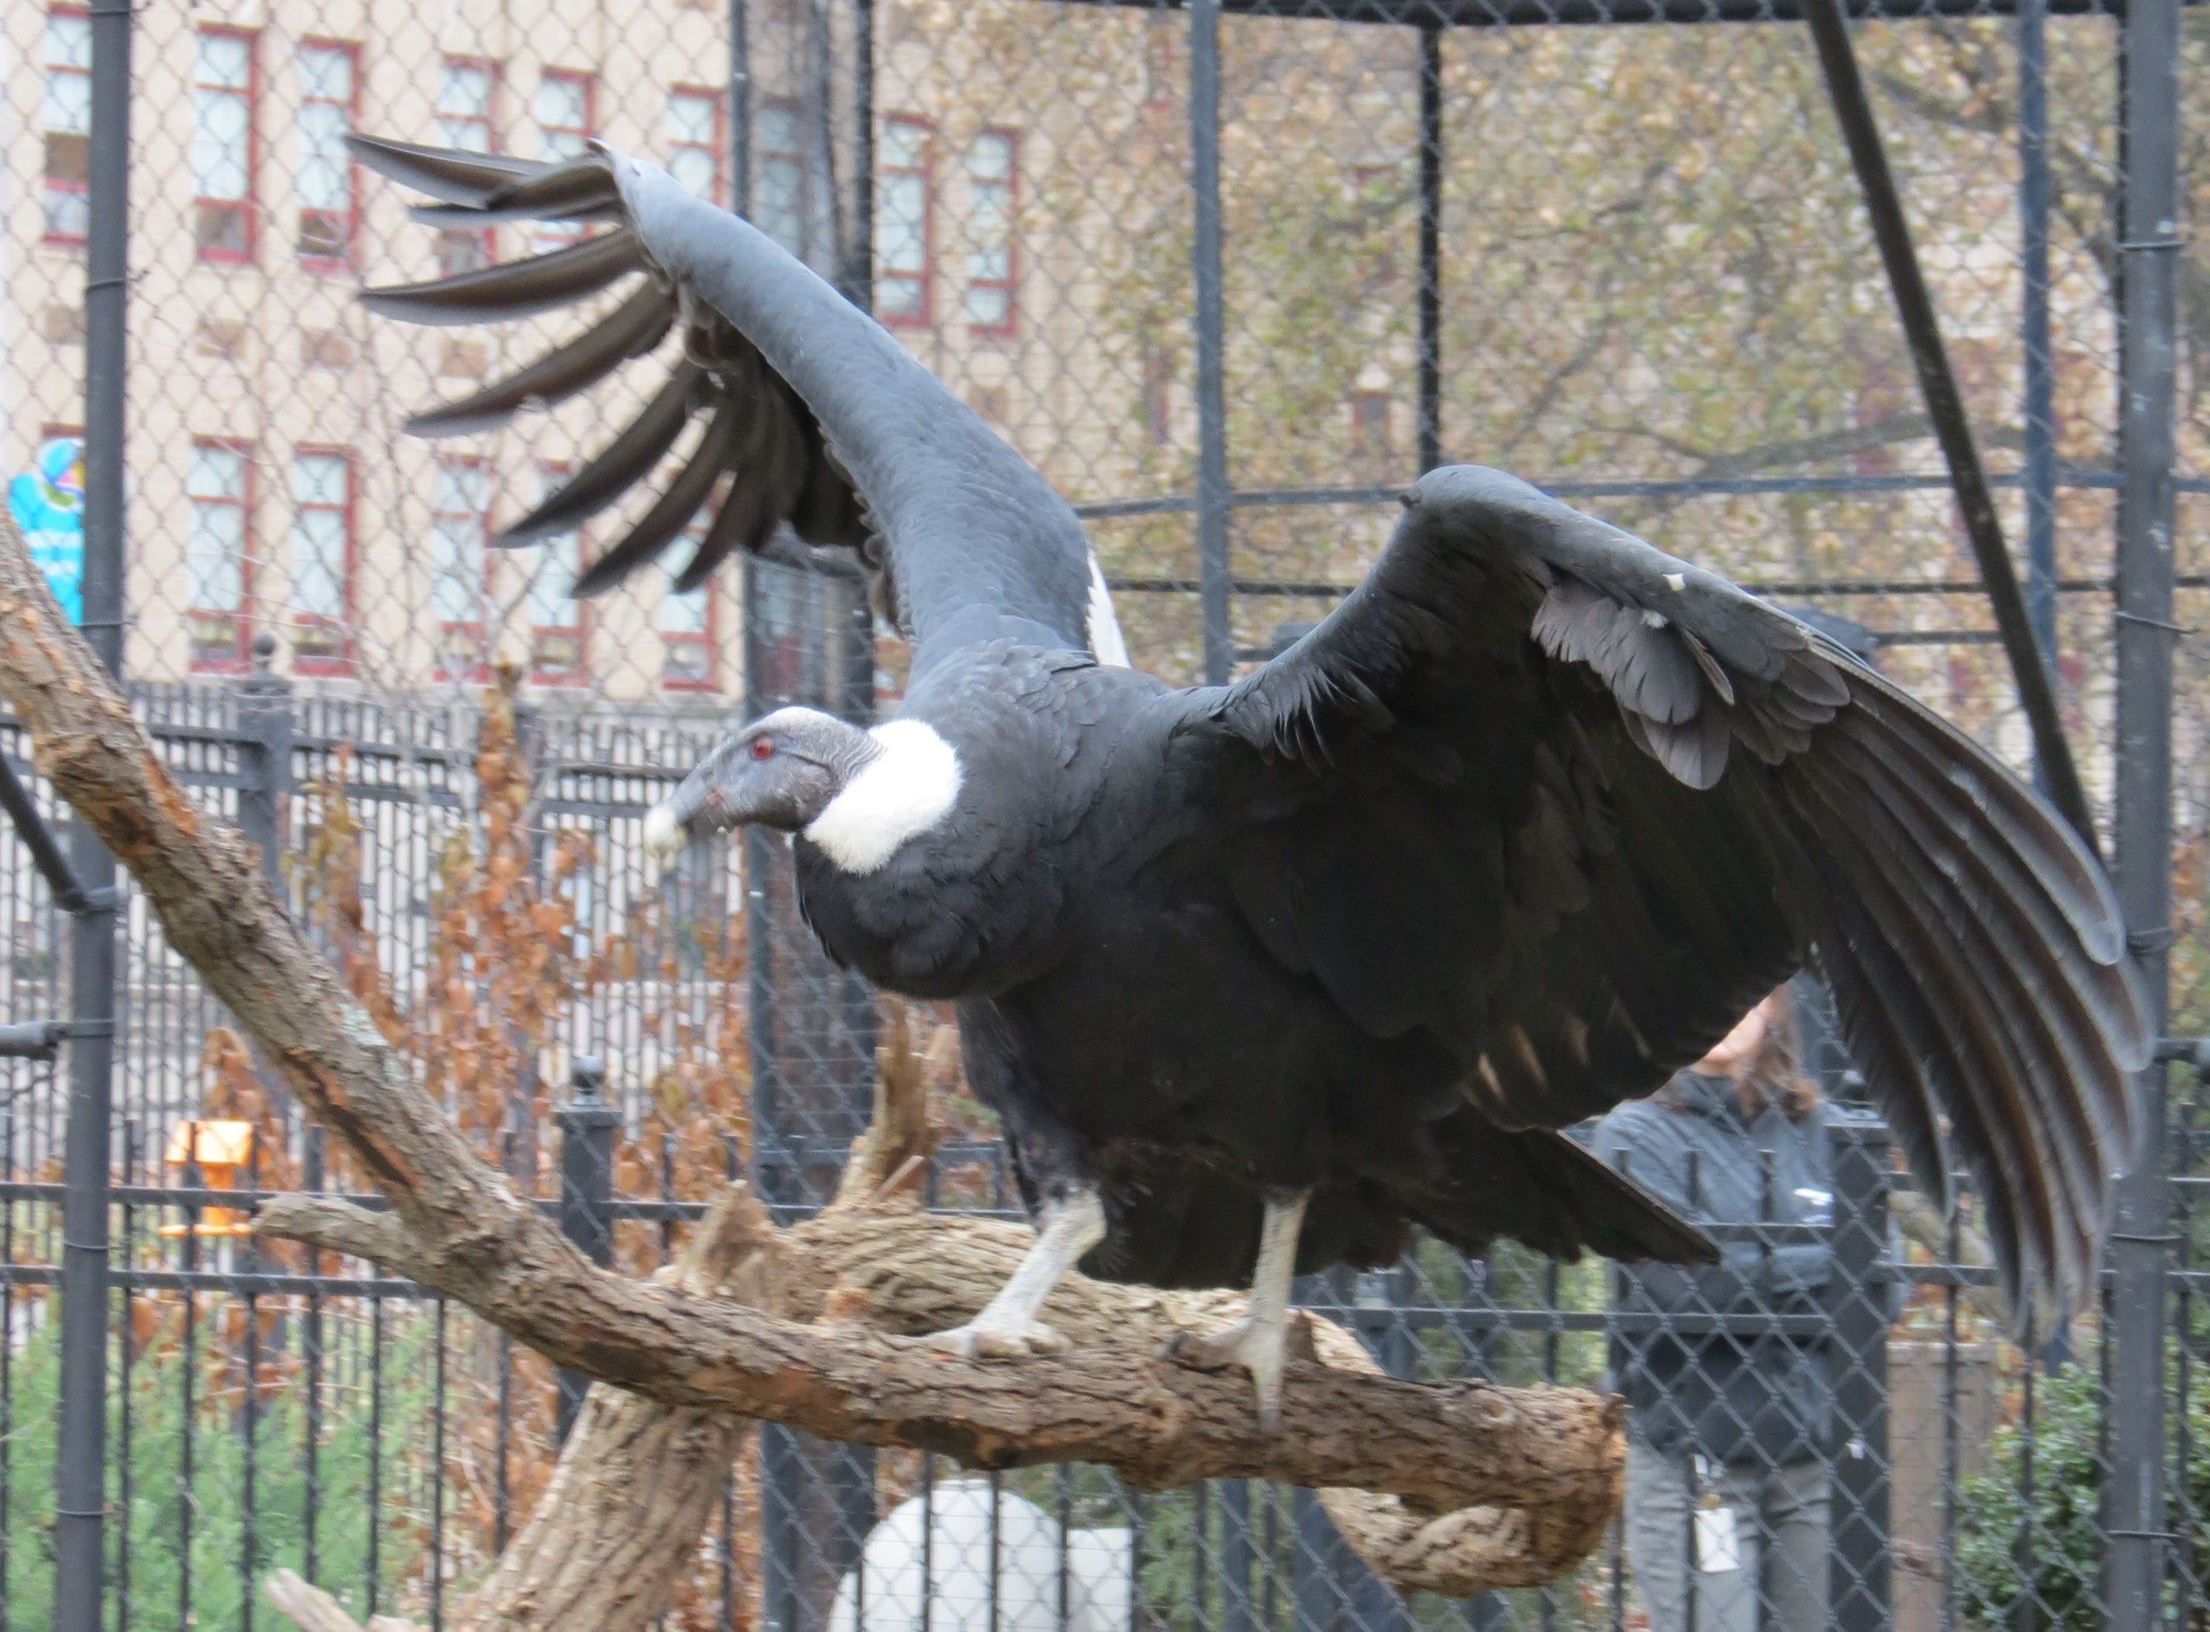 http://www.post-gazette.com/image/2014/01/27/ca0,140,2210,1772/National-Aviary-condor-Precious.jpg